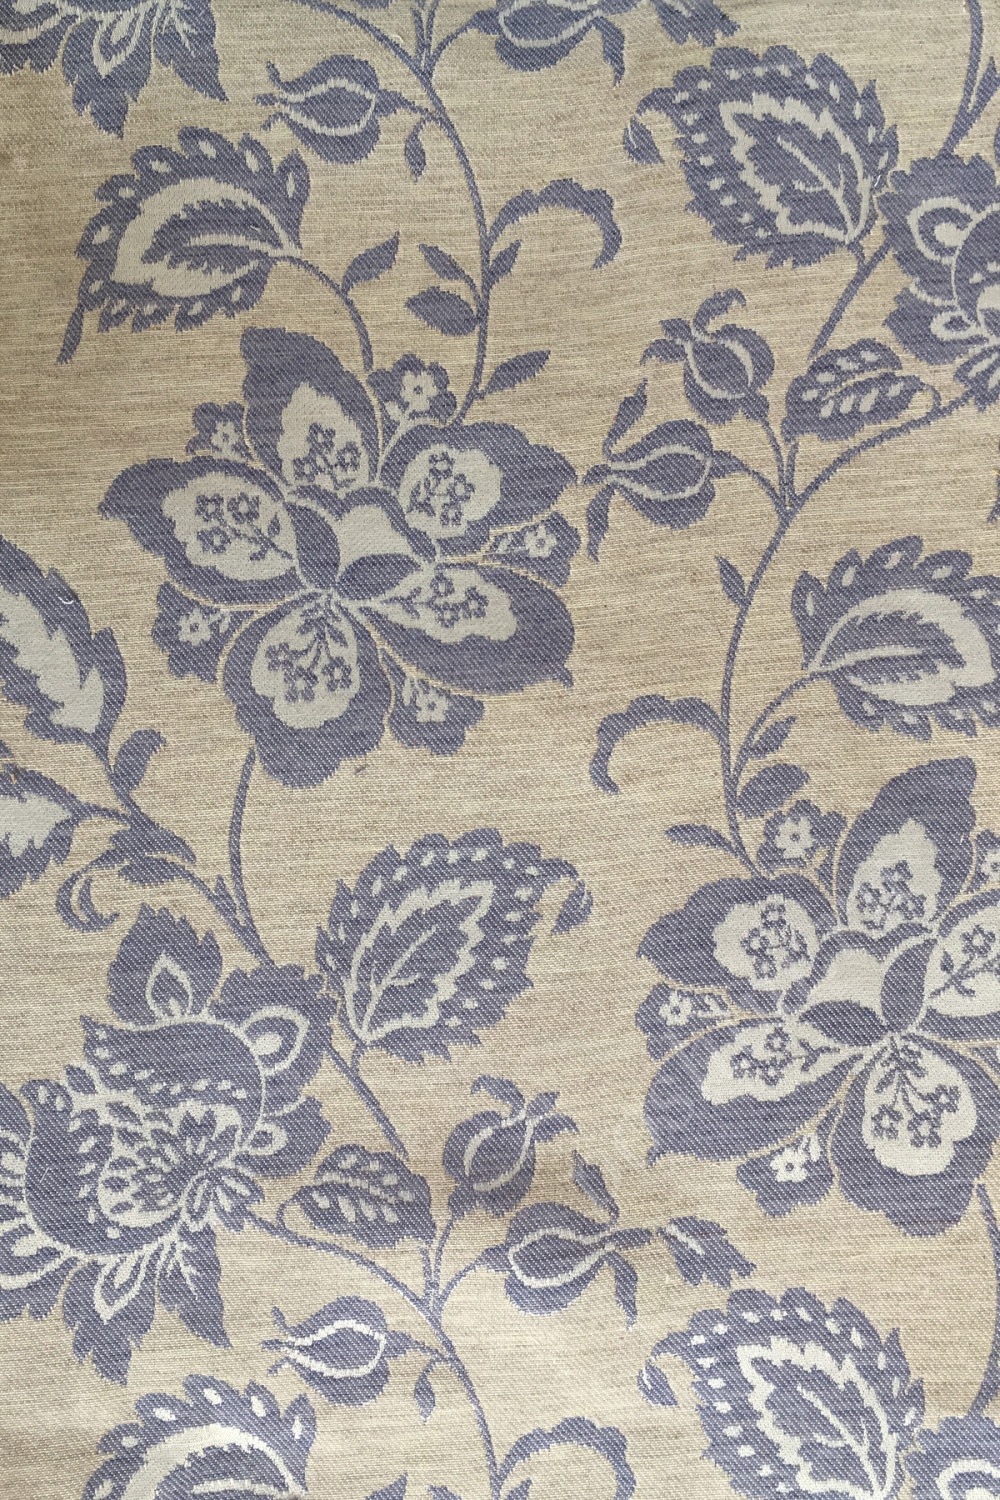 Портьерная ткань жаккард SUN JACOBEAN синий растительный орнамент на бежевом фоне (раппорт 35х31см)